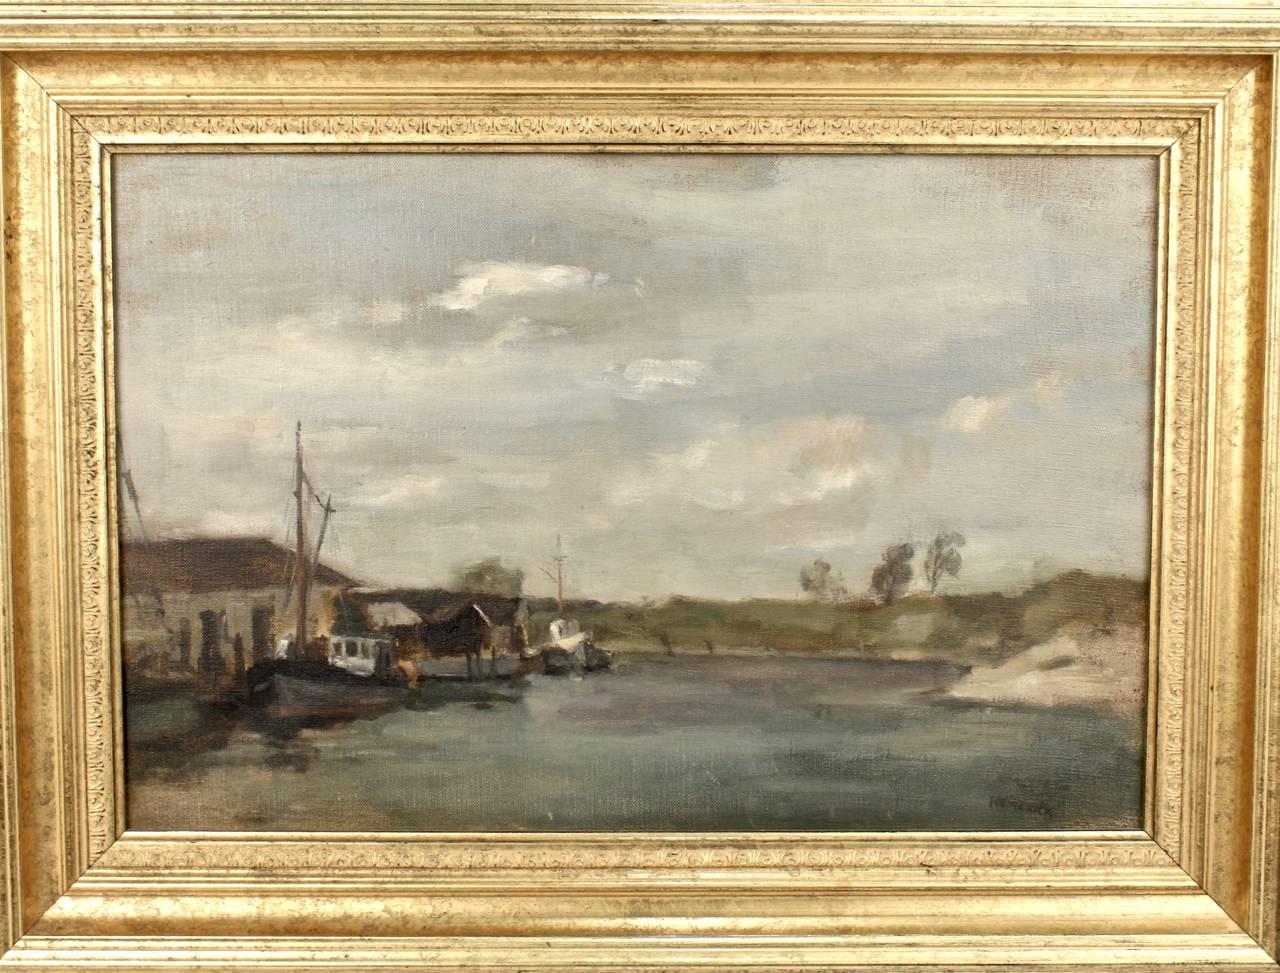 Seymour Remenick (1923-1999).

Une peinture à l'huile sur toile sans titre représentant une scène marine avec des bateaux et un petit quai sur une crique. Probablement une scène de la côte atlantique du sud du New Jersey, du Maryland ou du